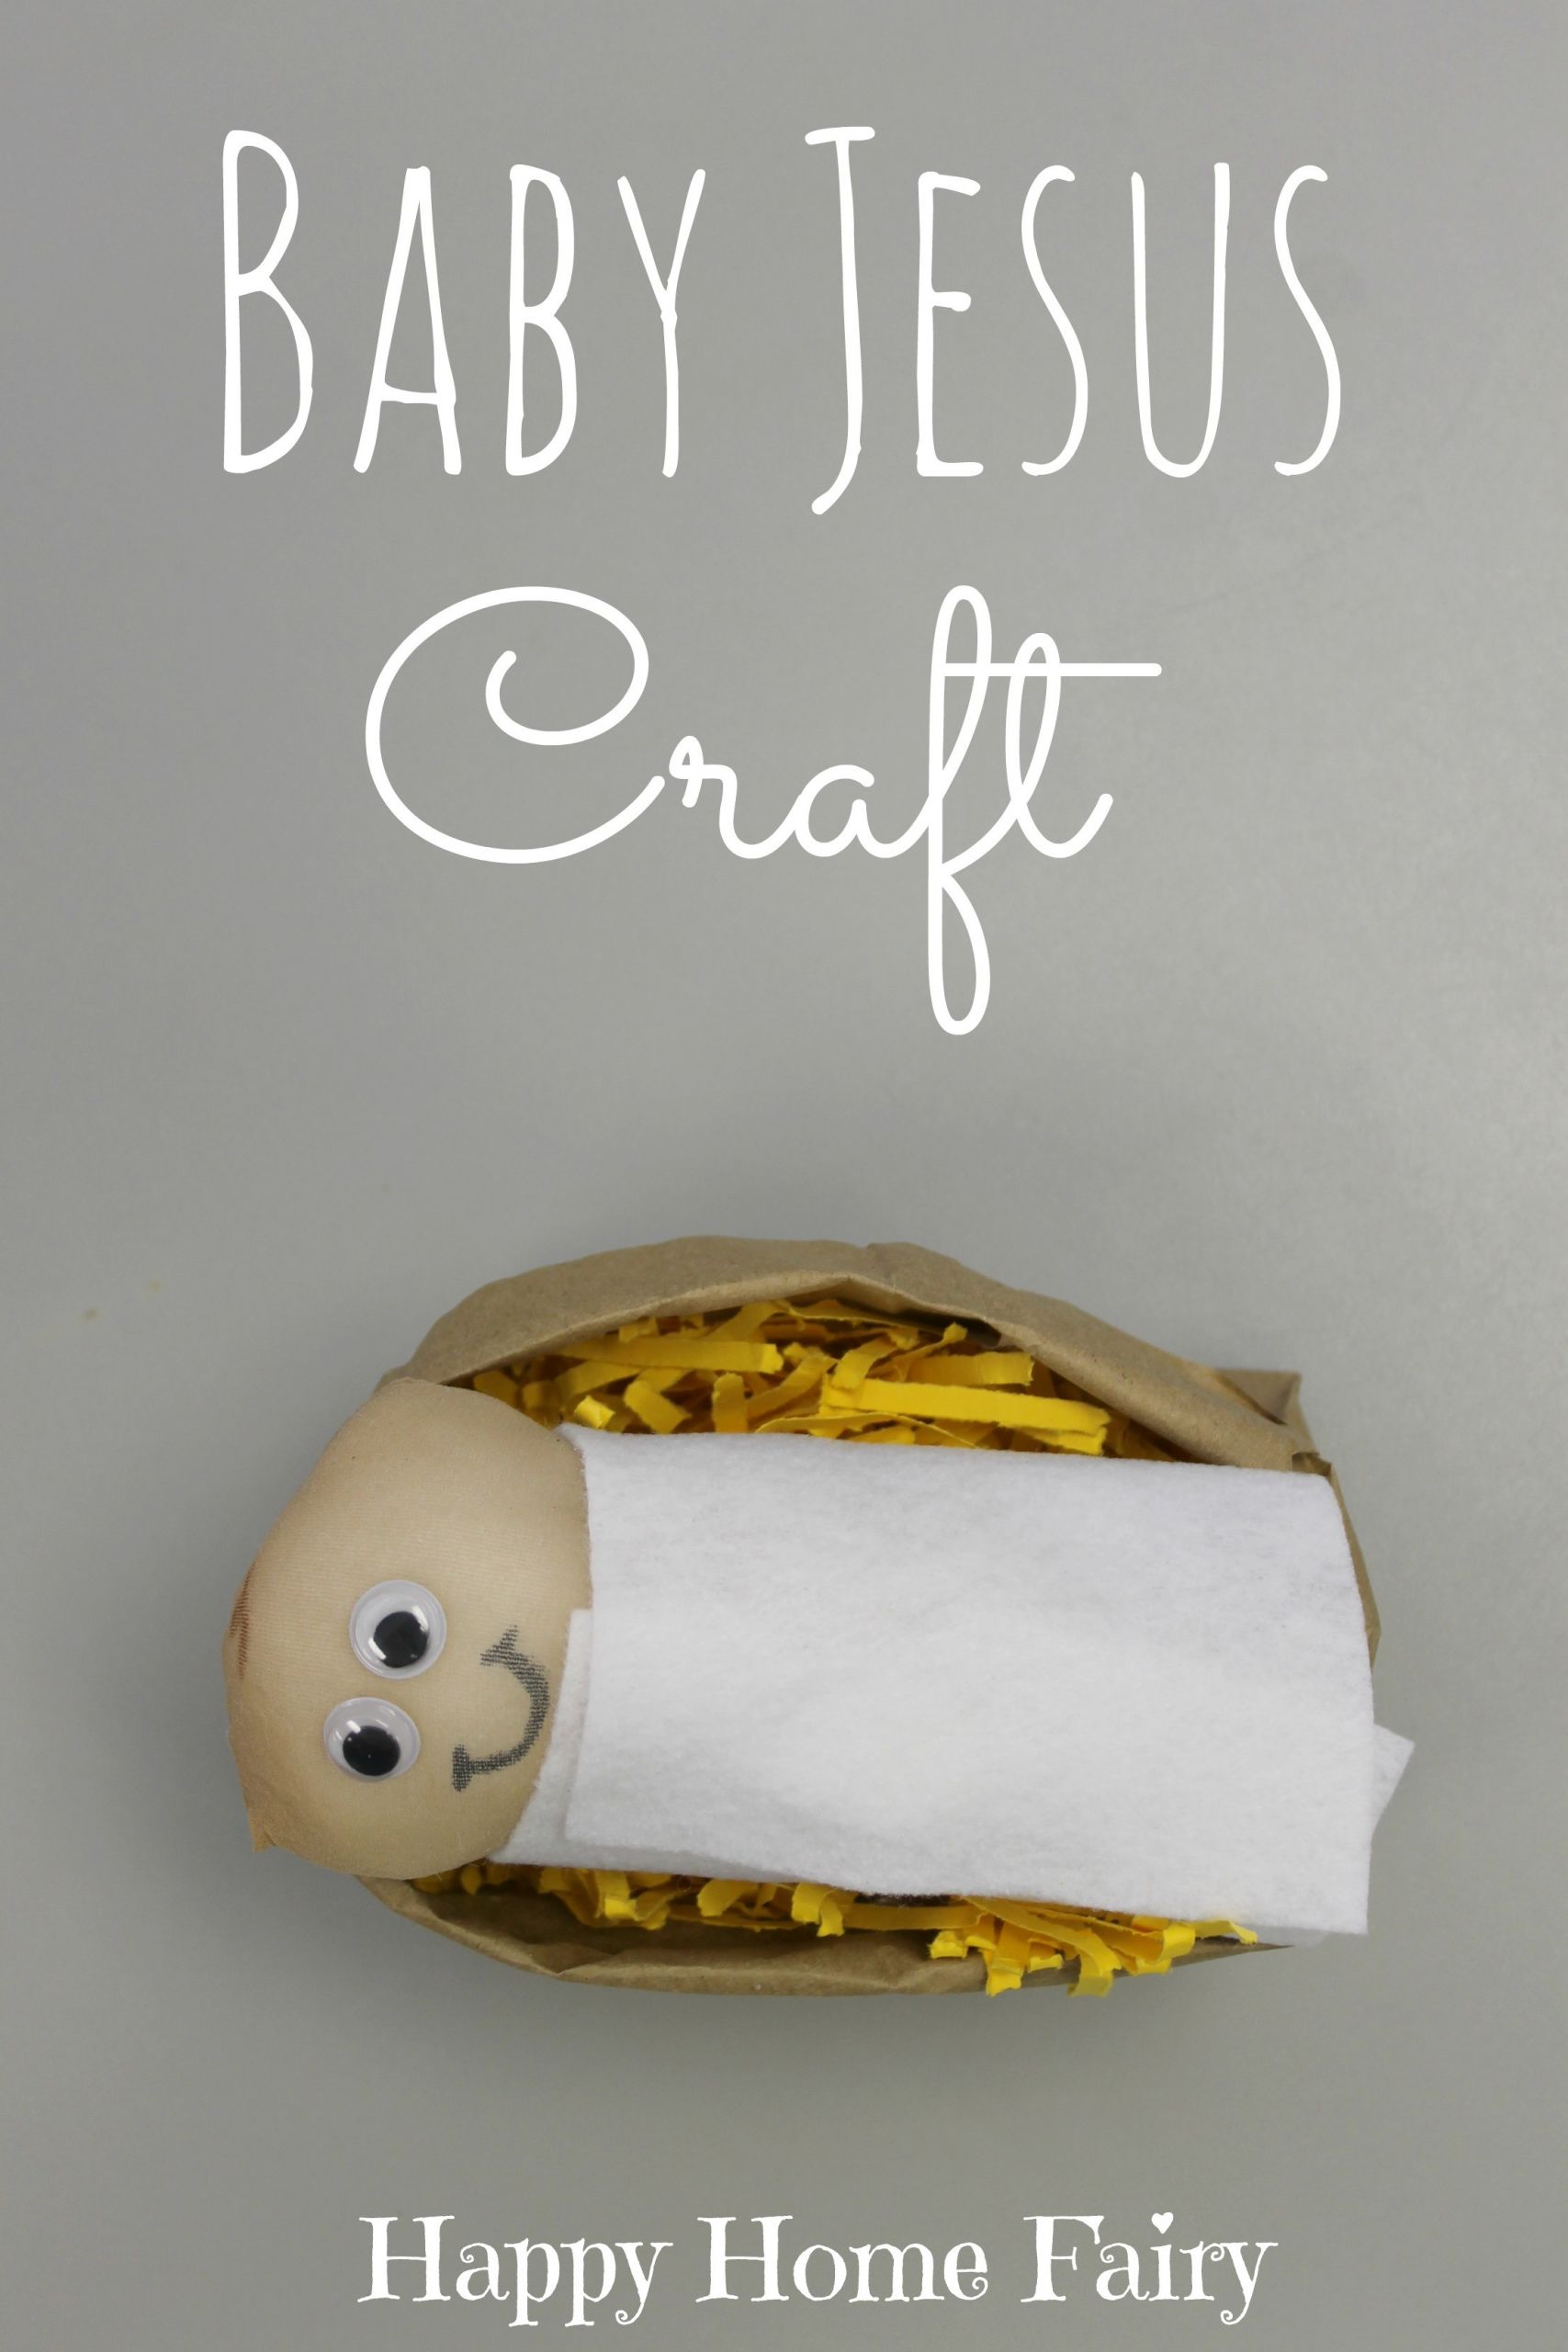 Baby Jesus Craft For Preschoolers
 Baby Jesus Craft Happy Home Fairy